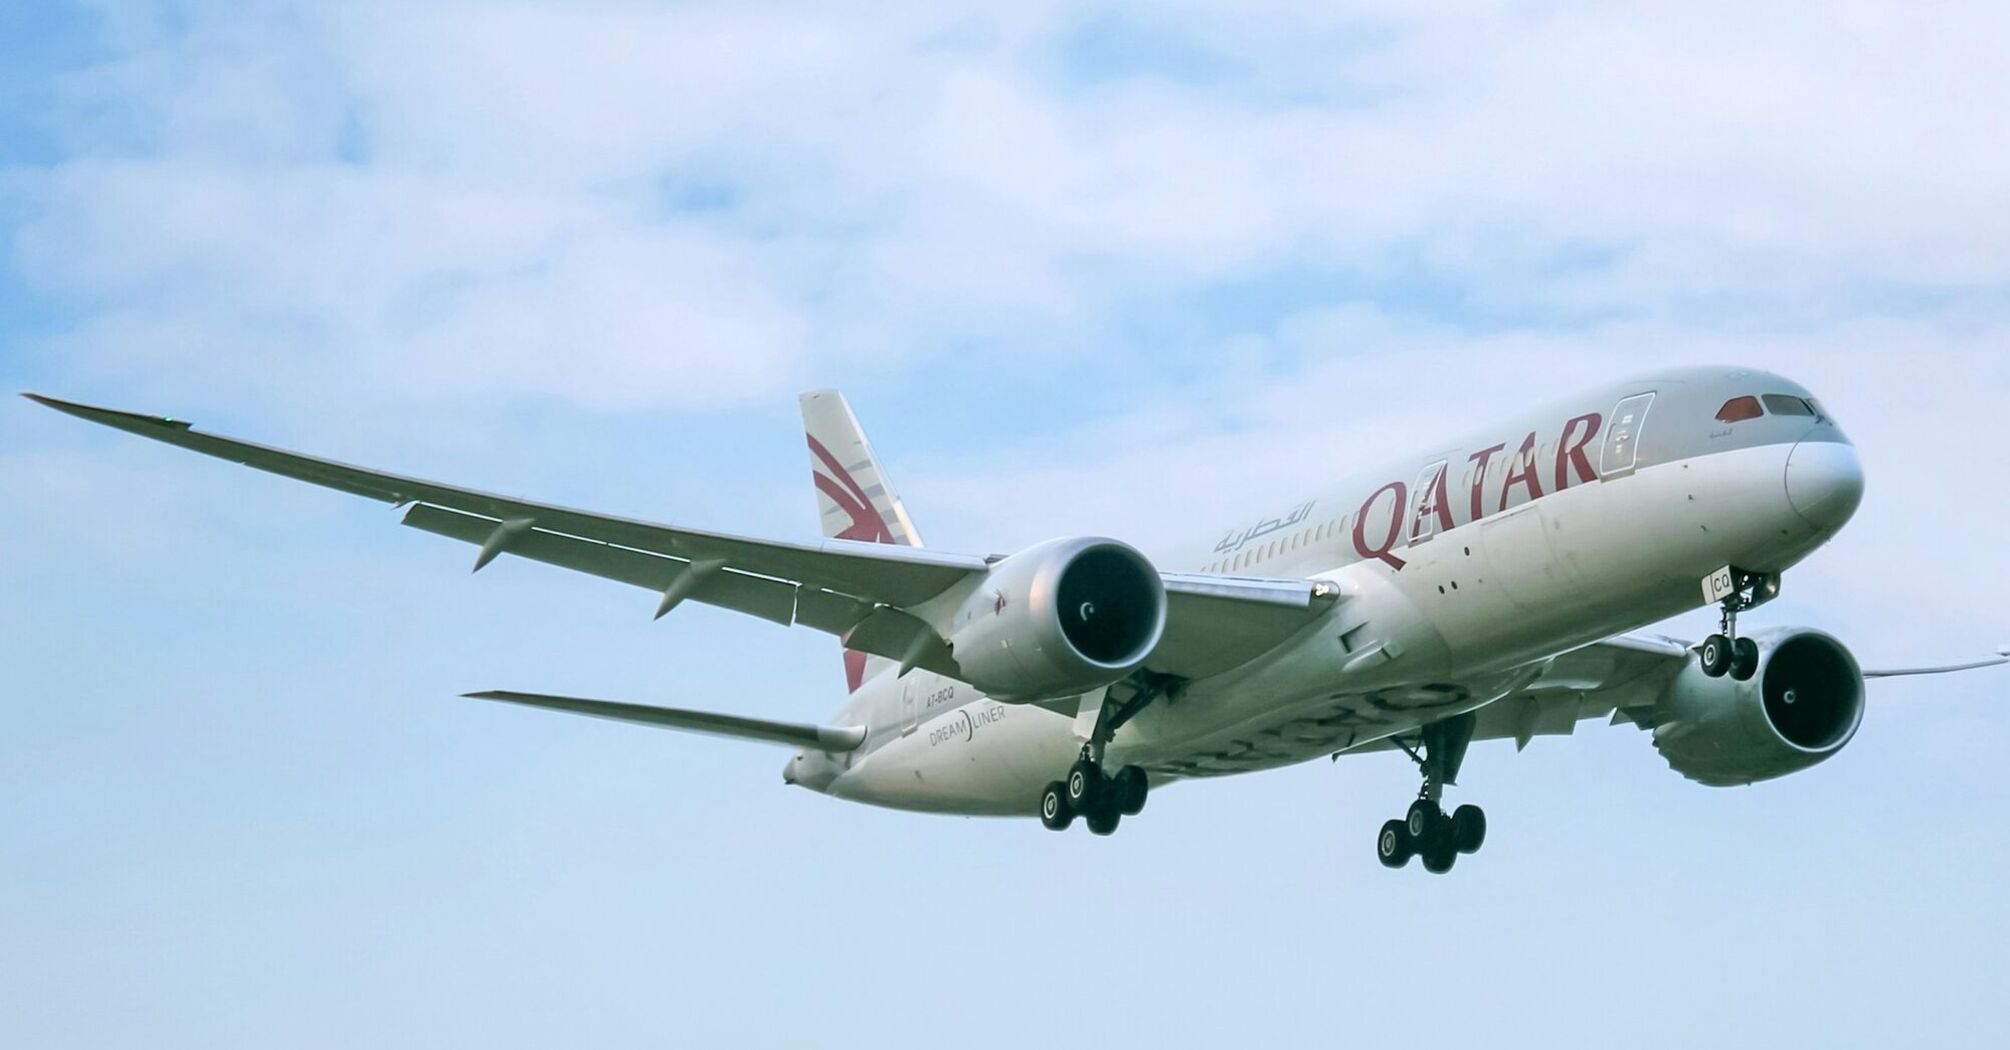 Qatar Airways airplane in flight